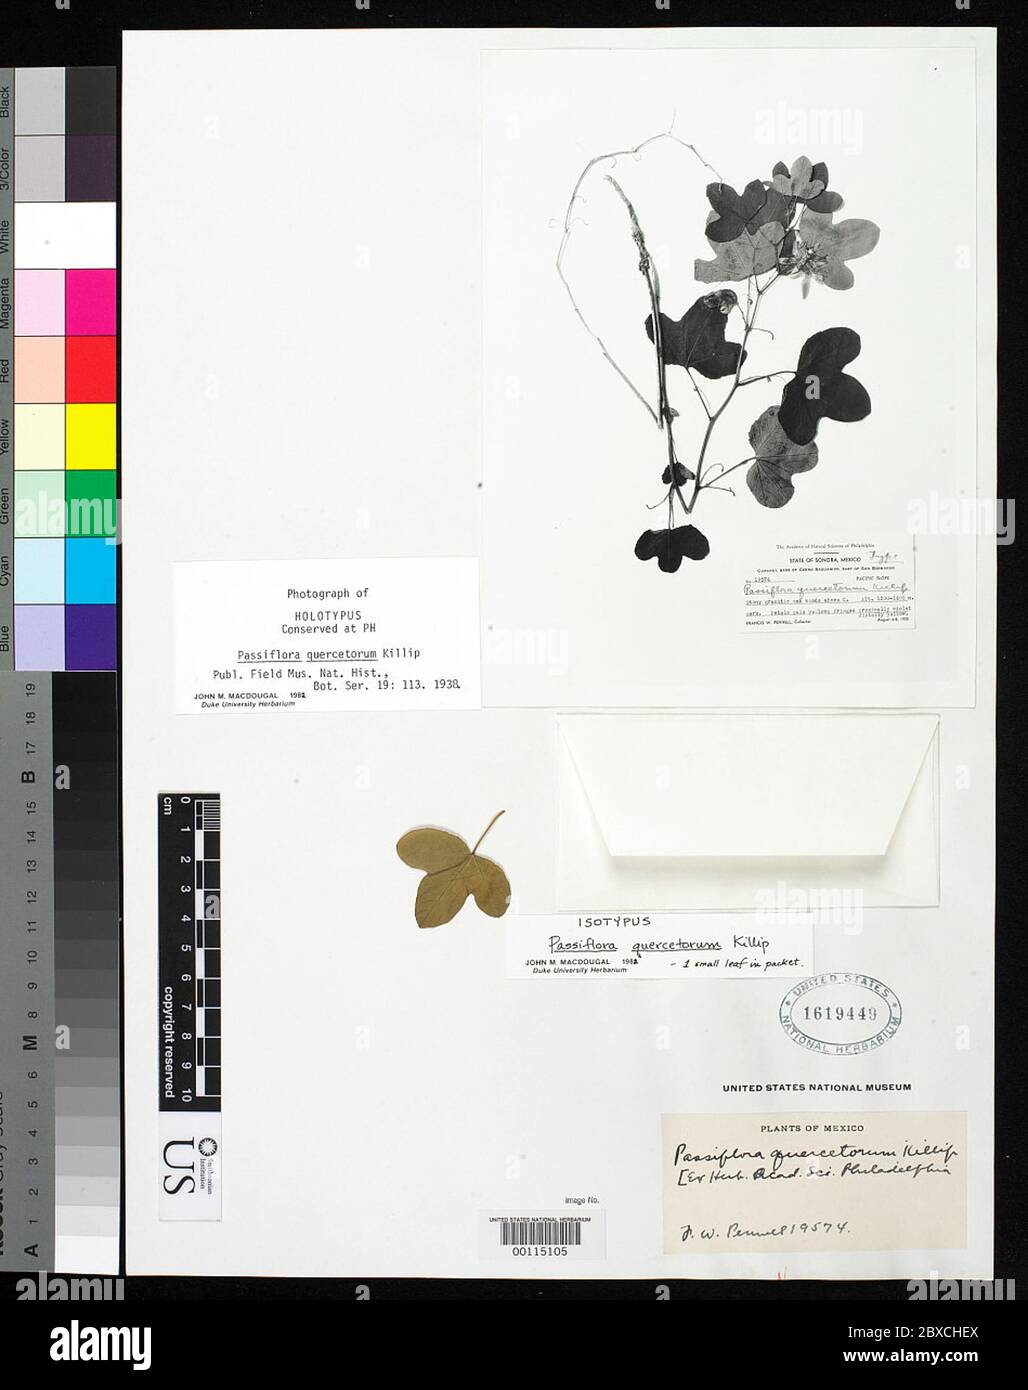 Passiflora quercetorum Killip Passiflora quercetorum Killip. Stock Photo